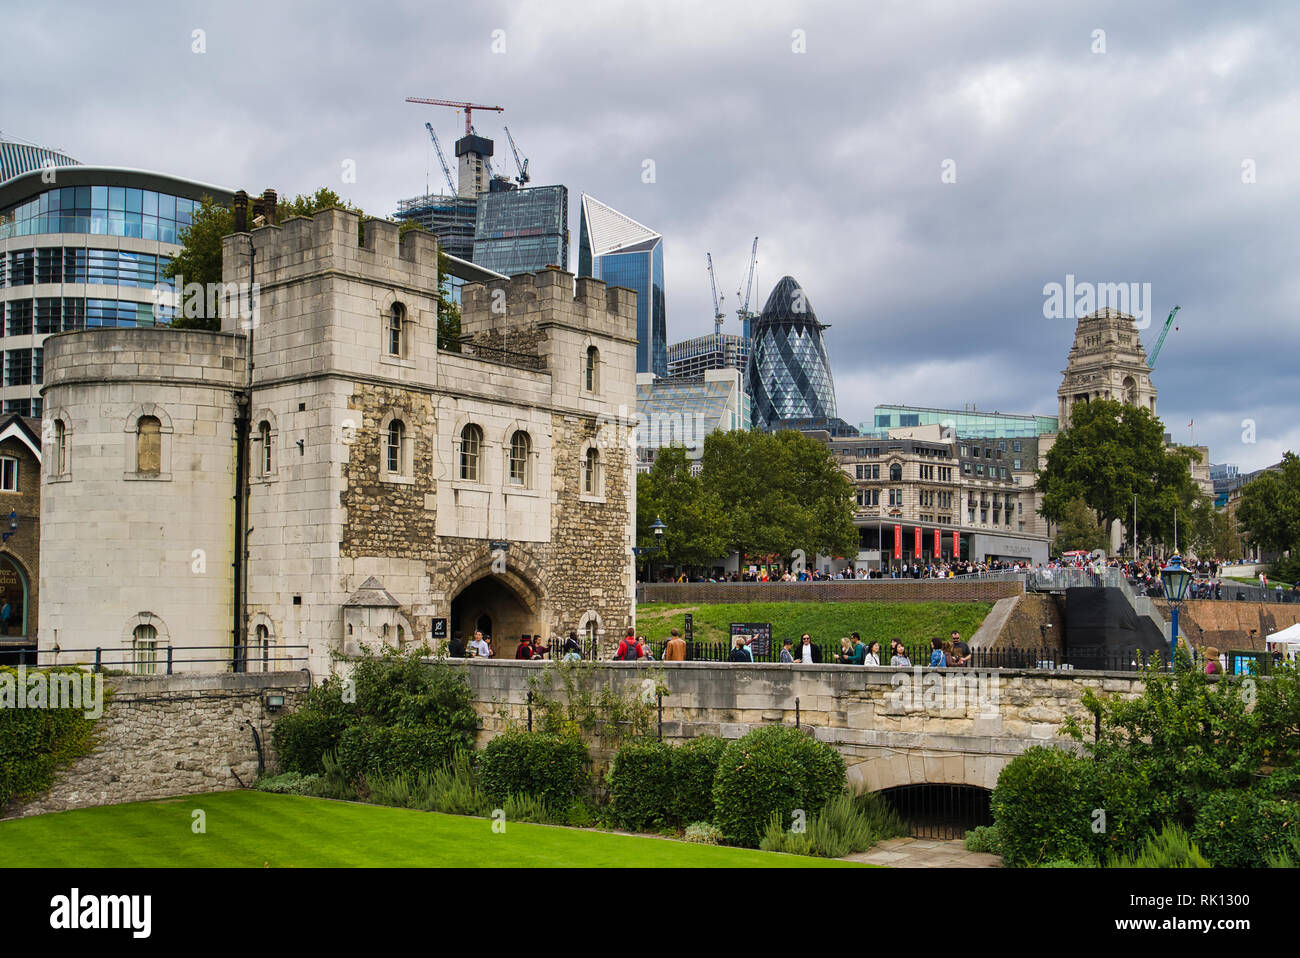 LONDON, Großbritannien - 9 September, 2018: Das königliche Schloss und die Festung von Ihrer Majestät, als der Turm bekannt. Stockfoto